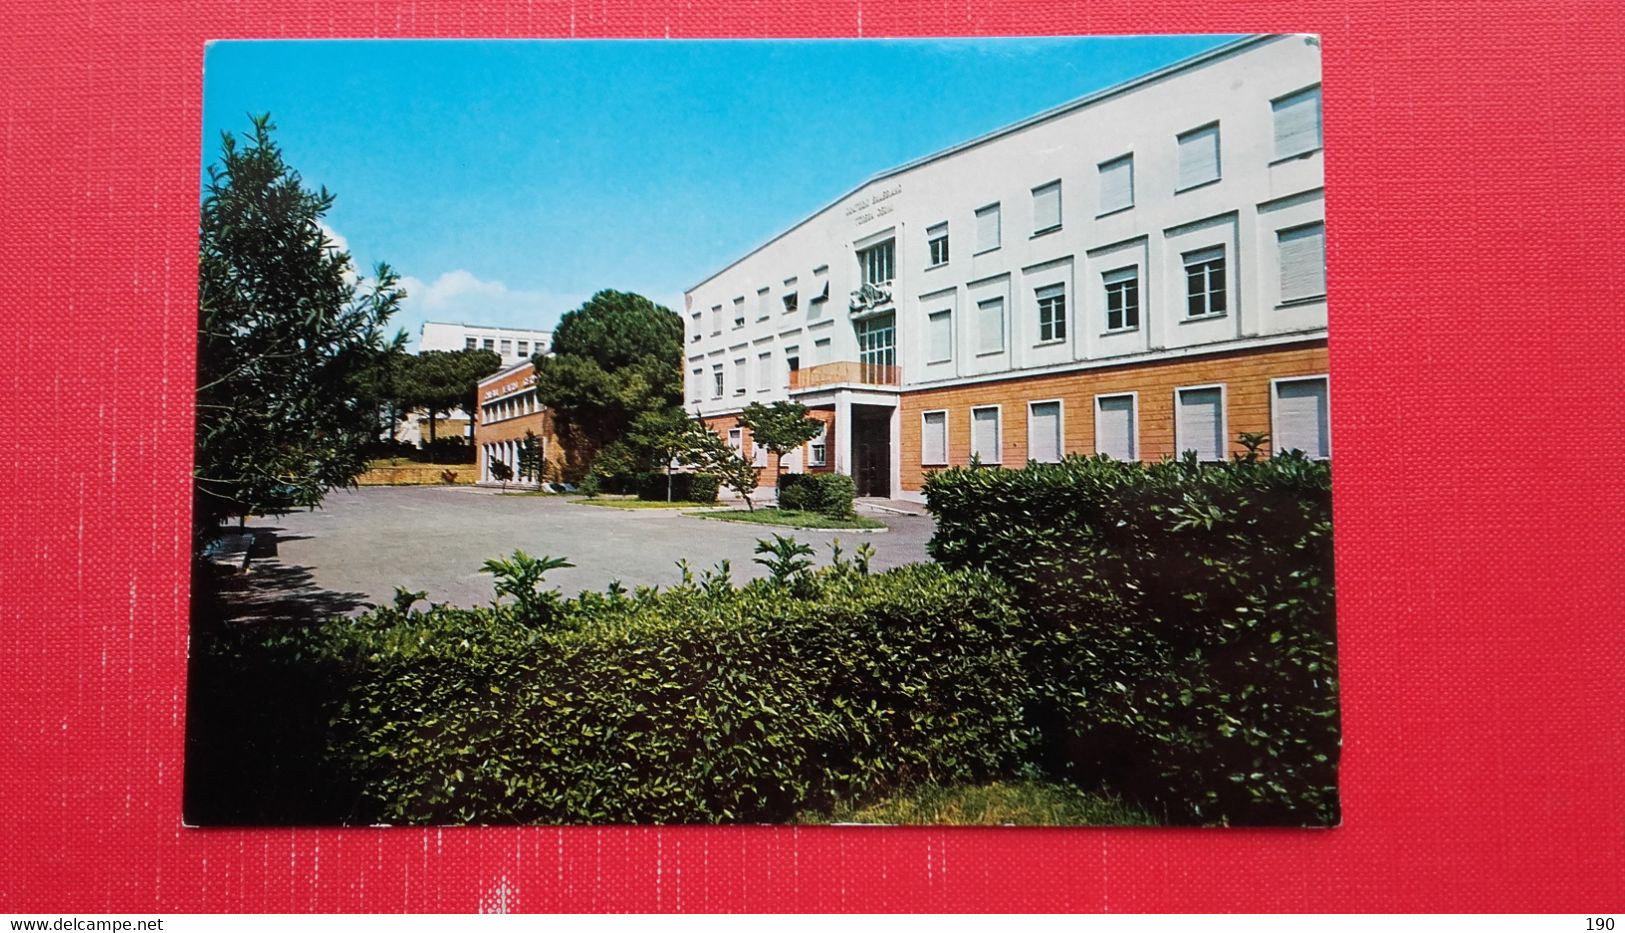 Roma.Instituto Salesiano.Teresa Gerni.2 Postcards - Educazione, Scuole E Università